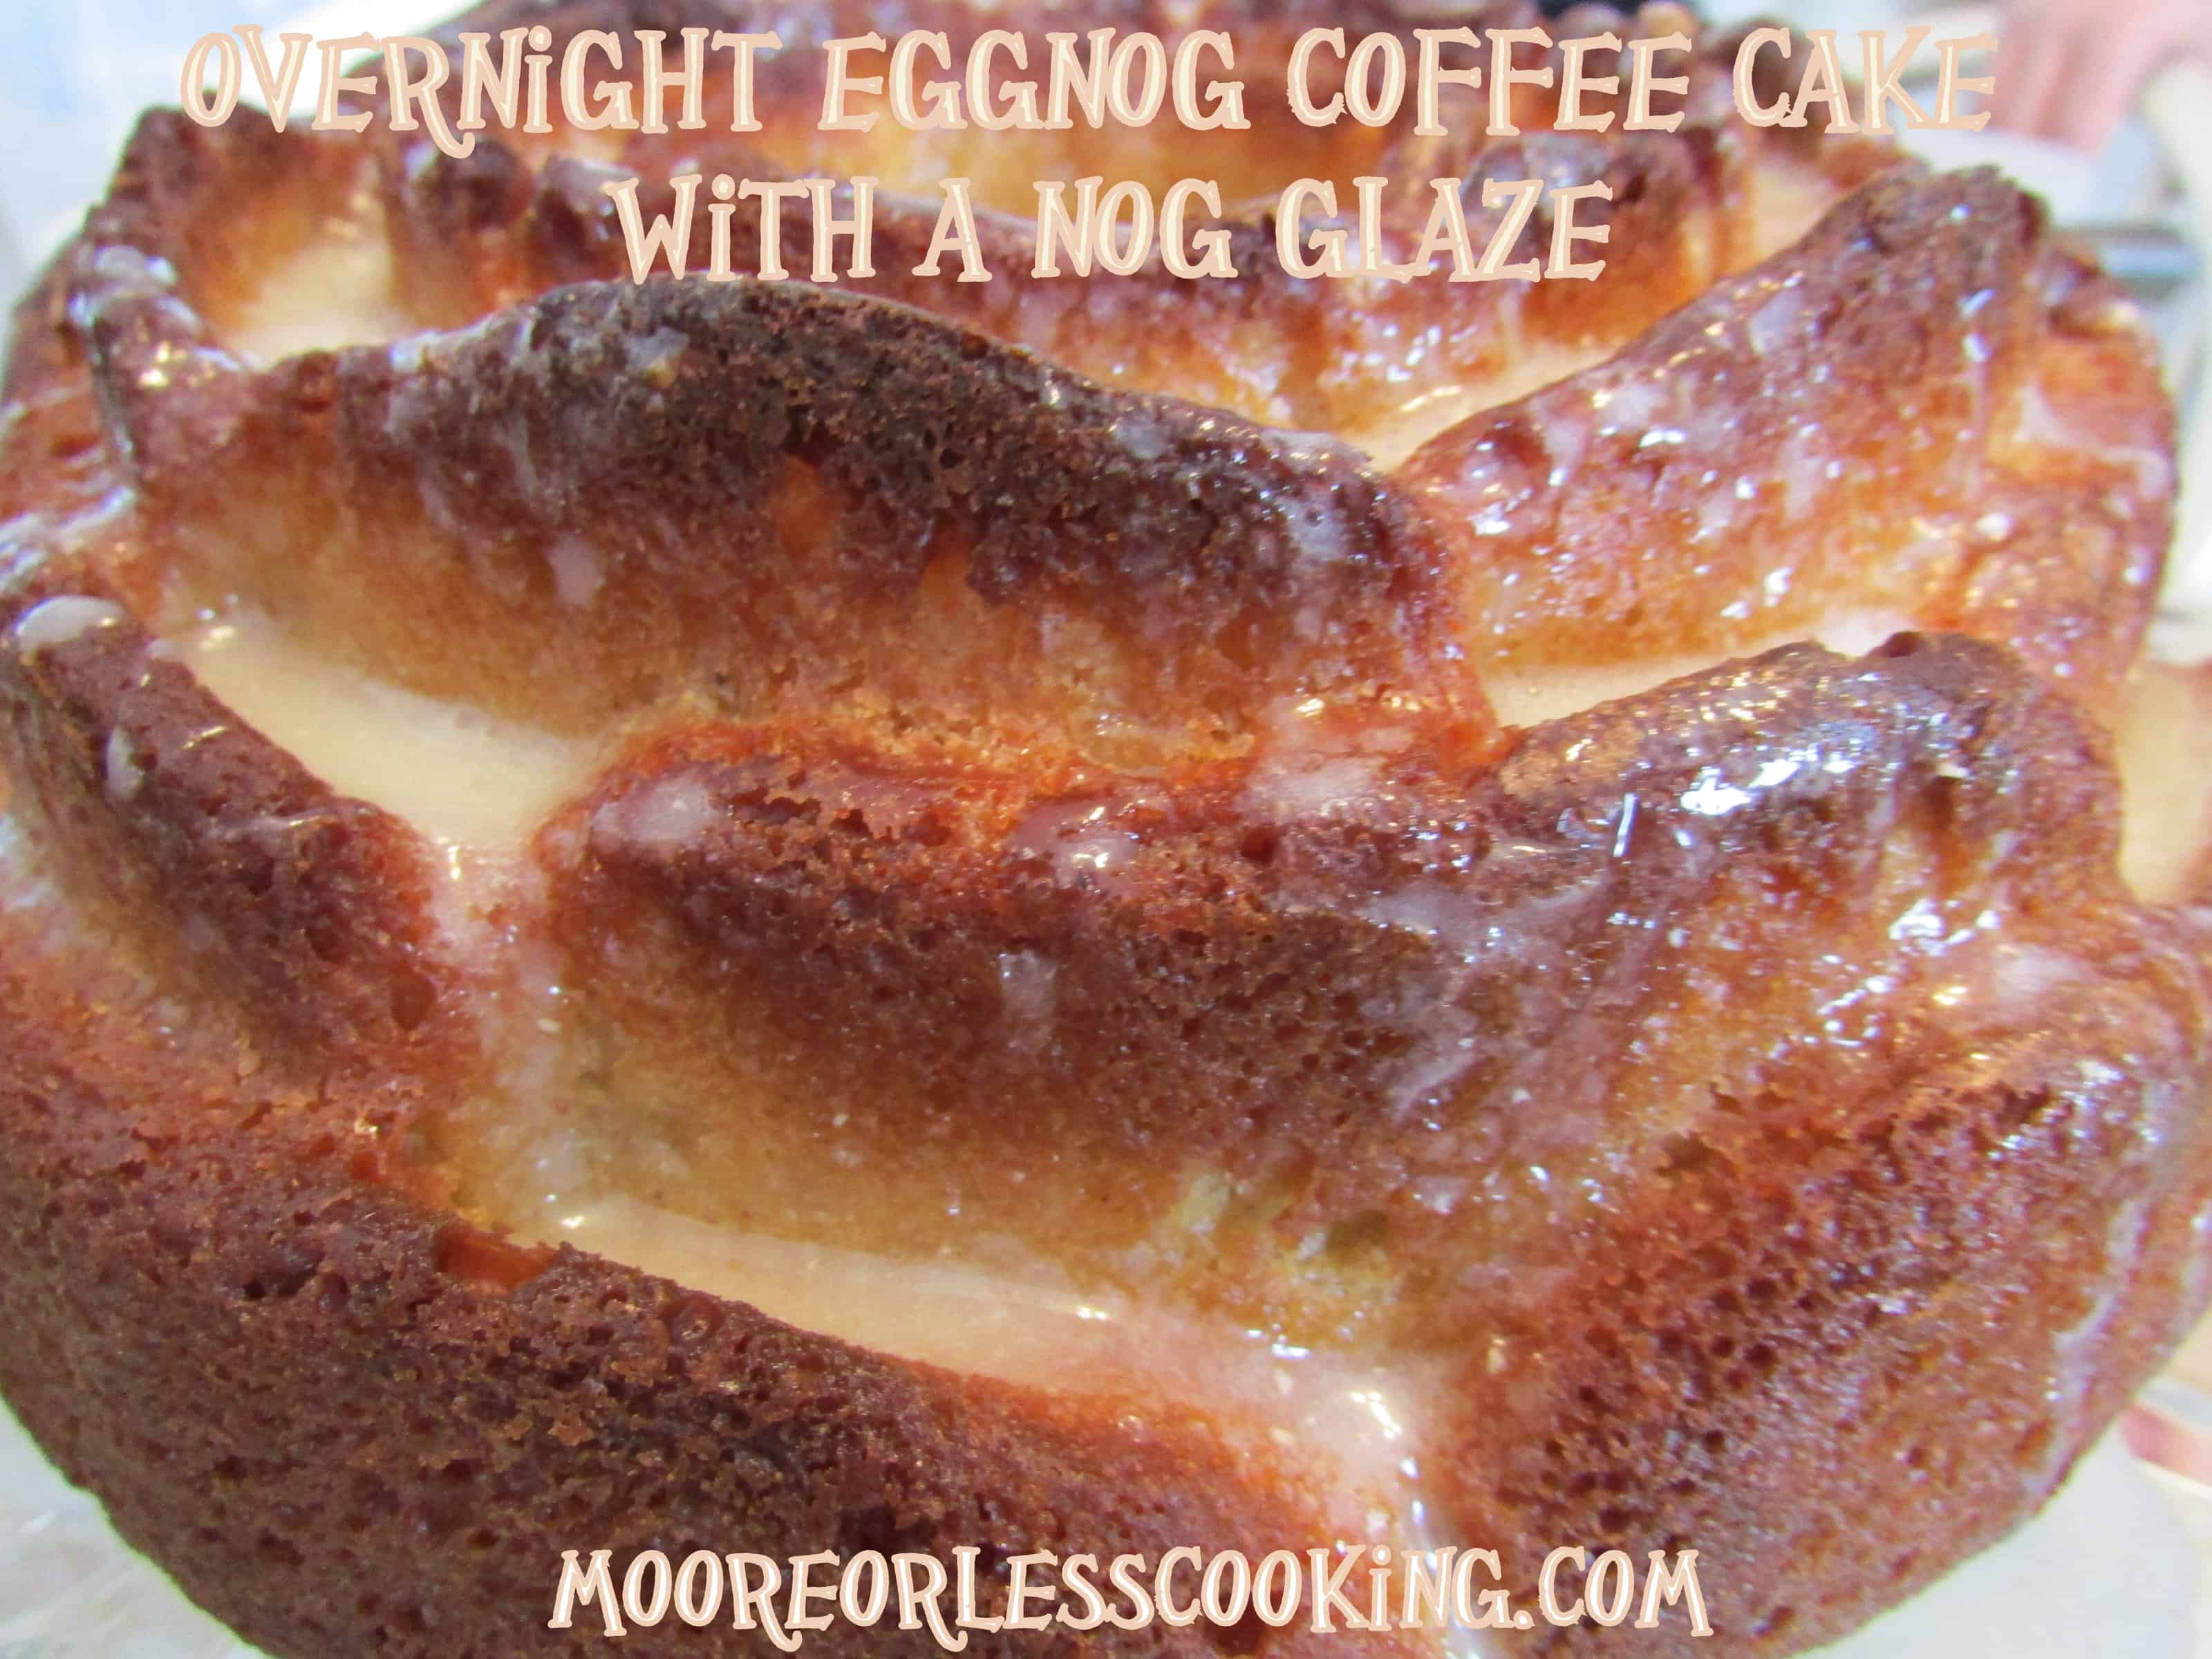 Overnight Eggnog Coffee Cake with a Nog Glaze